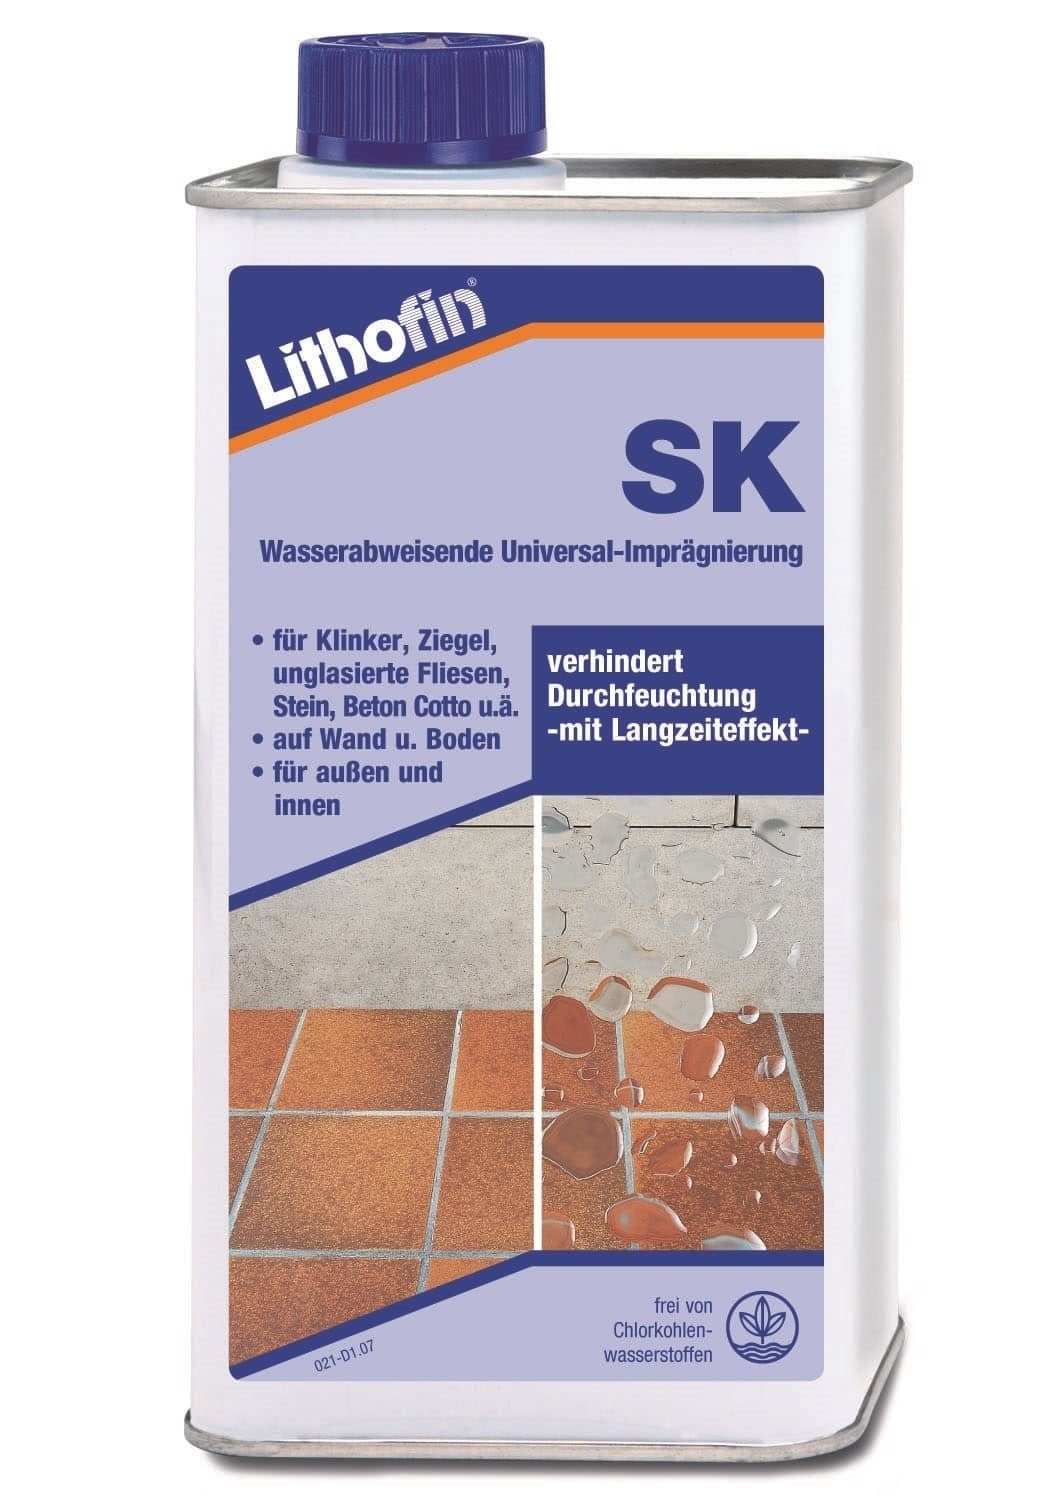 Lithofin LITHOFIN SK Universalimprägnierung 1 Naturstein-Reiniger Ltr